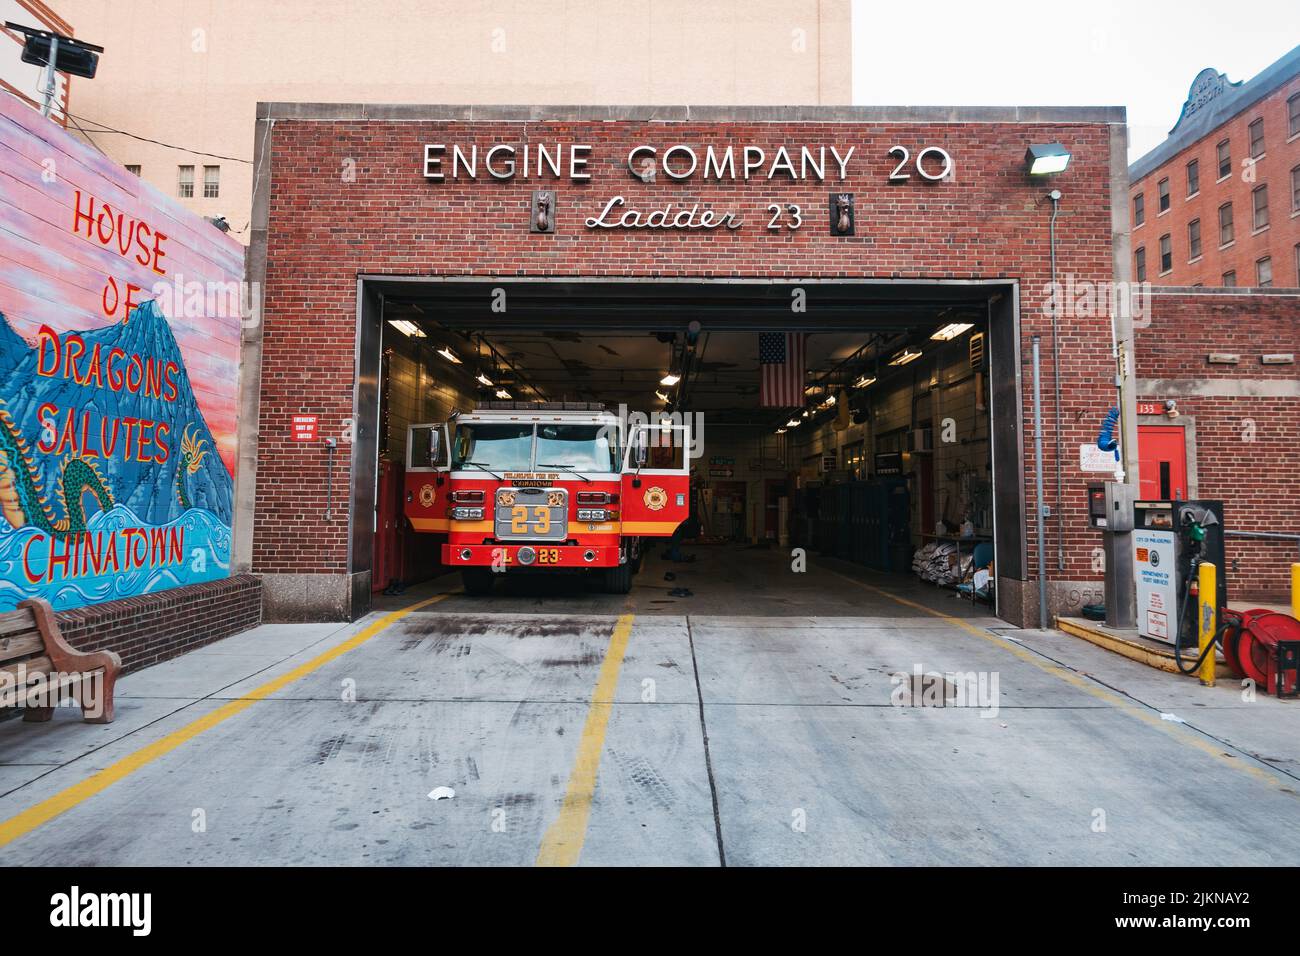 Ladder 23 camion dei vigili del fuoco all'interno della stazione di Chinatown del Philadelphia Fire Department, piena di un drago Street art Foto Stock